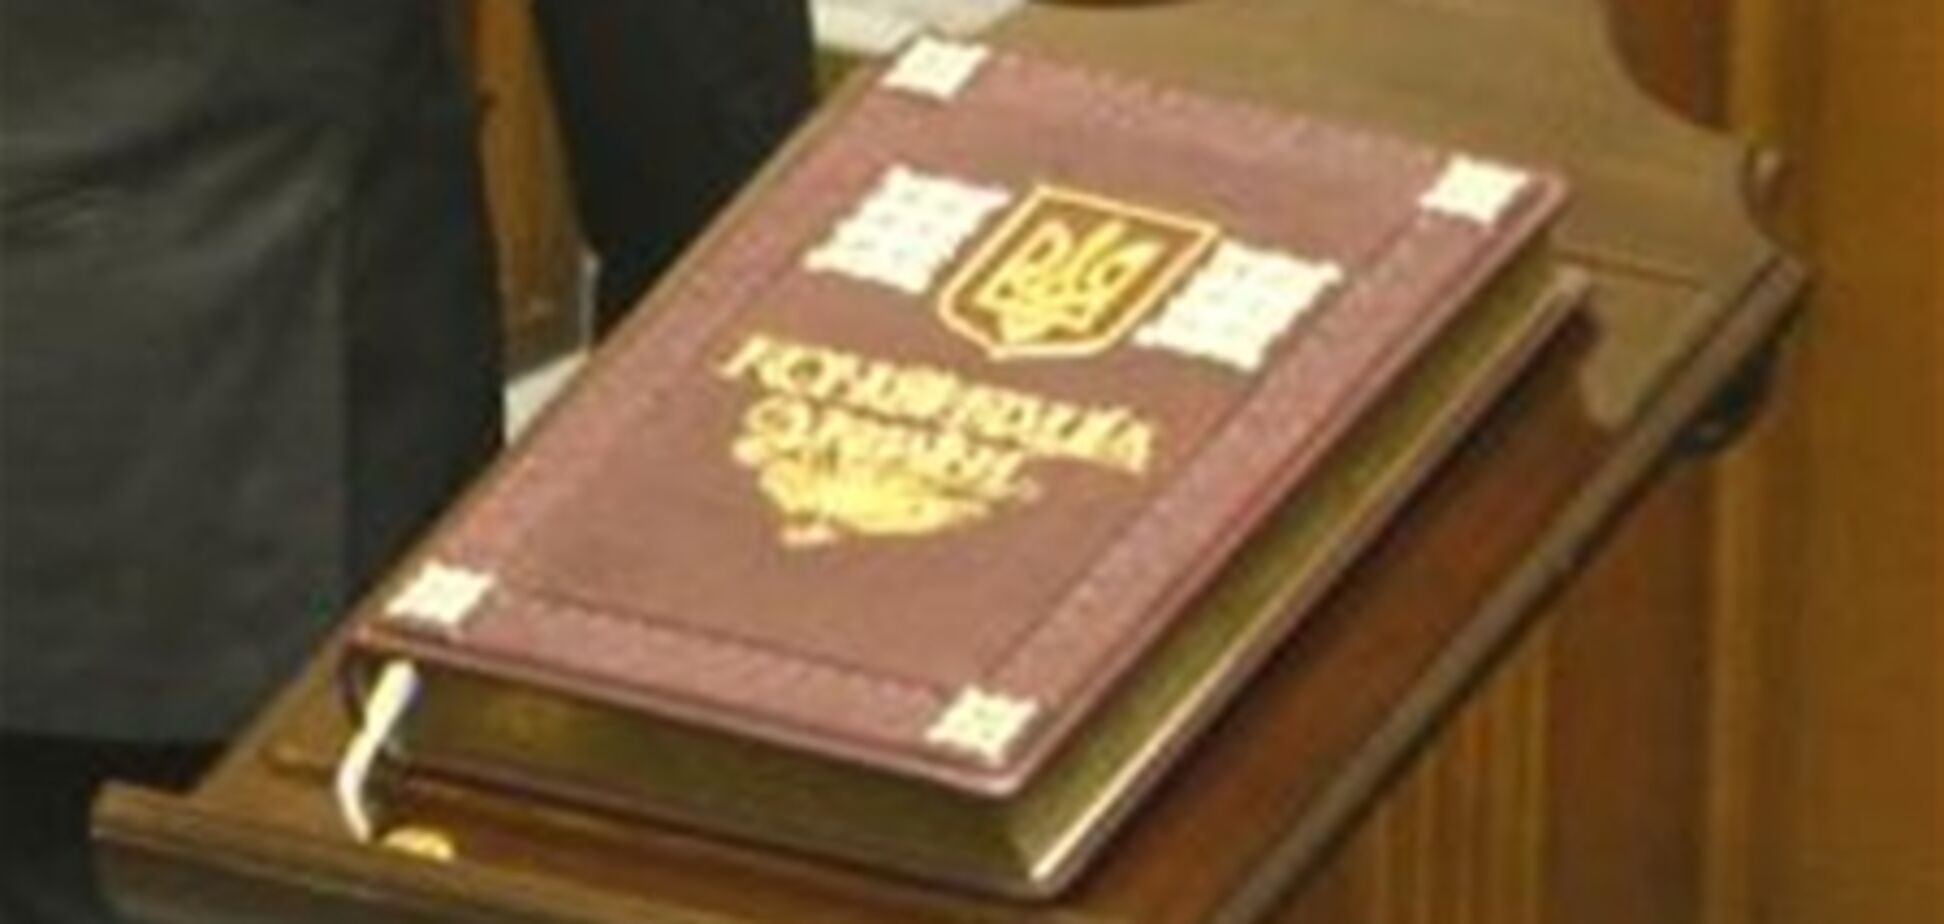 Украинской Конституции исполняется 16 лет